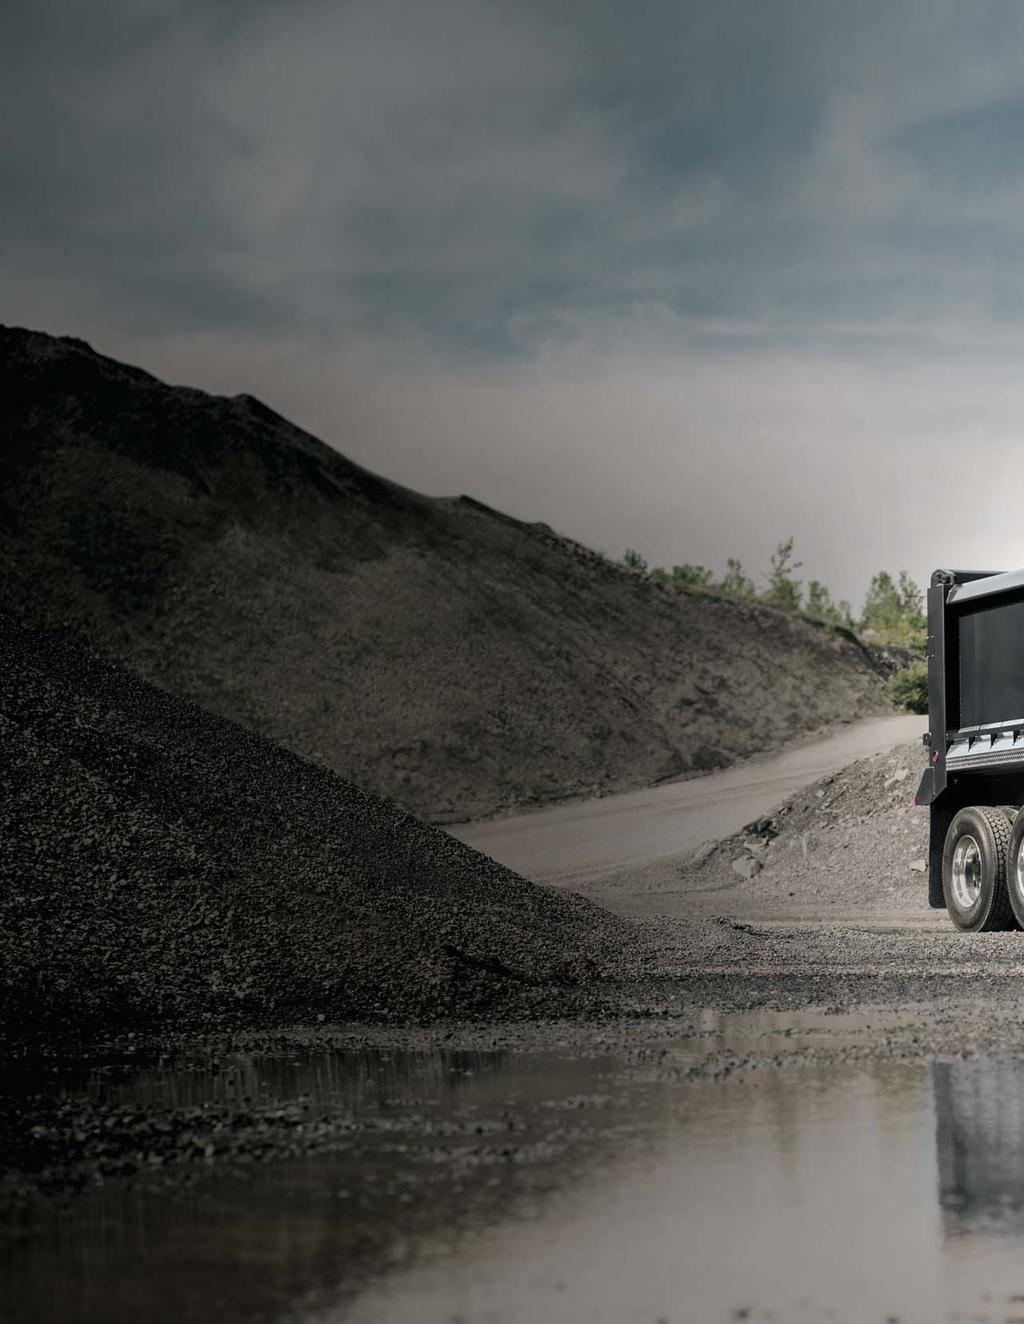 Granite Mack Granite son los cimientos de cualquier faena. Uno de los camiones más populares y probados.